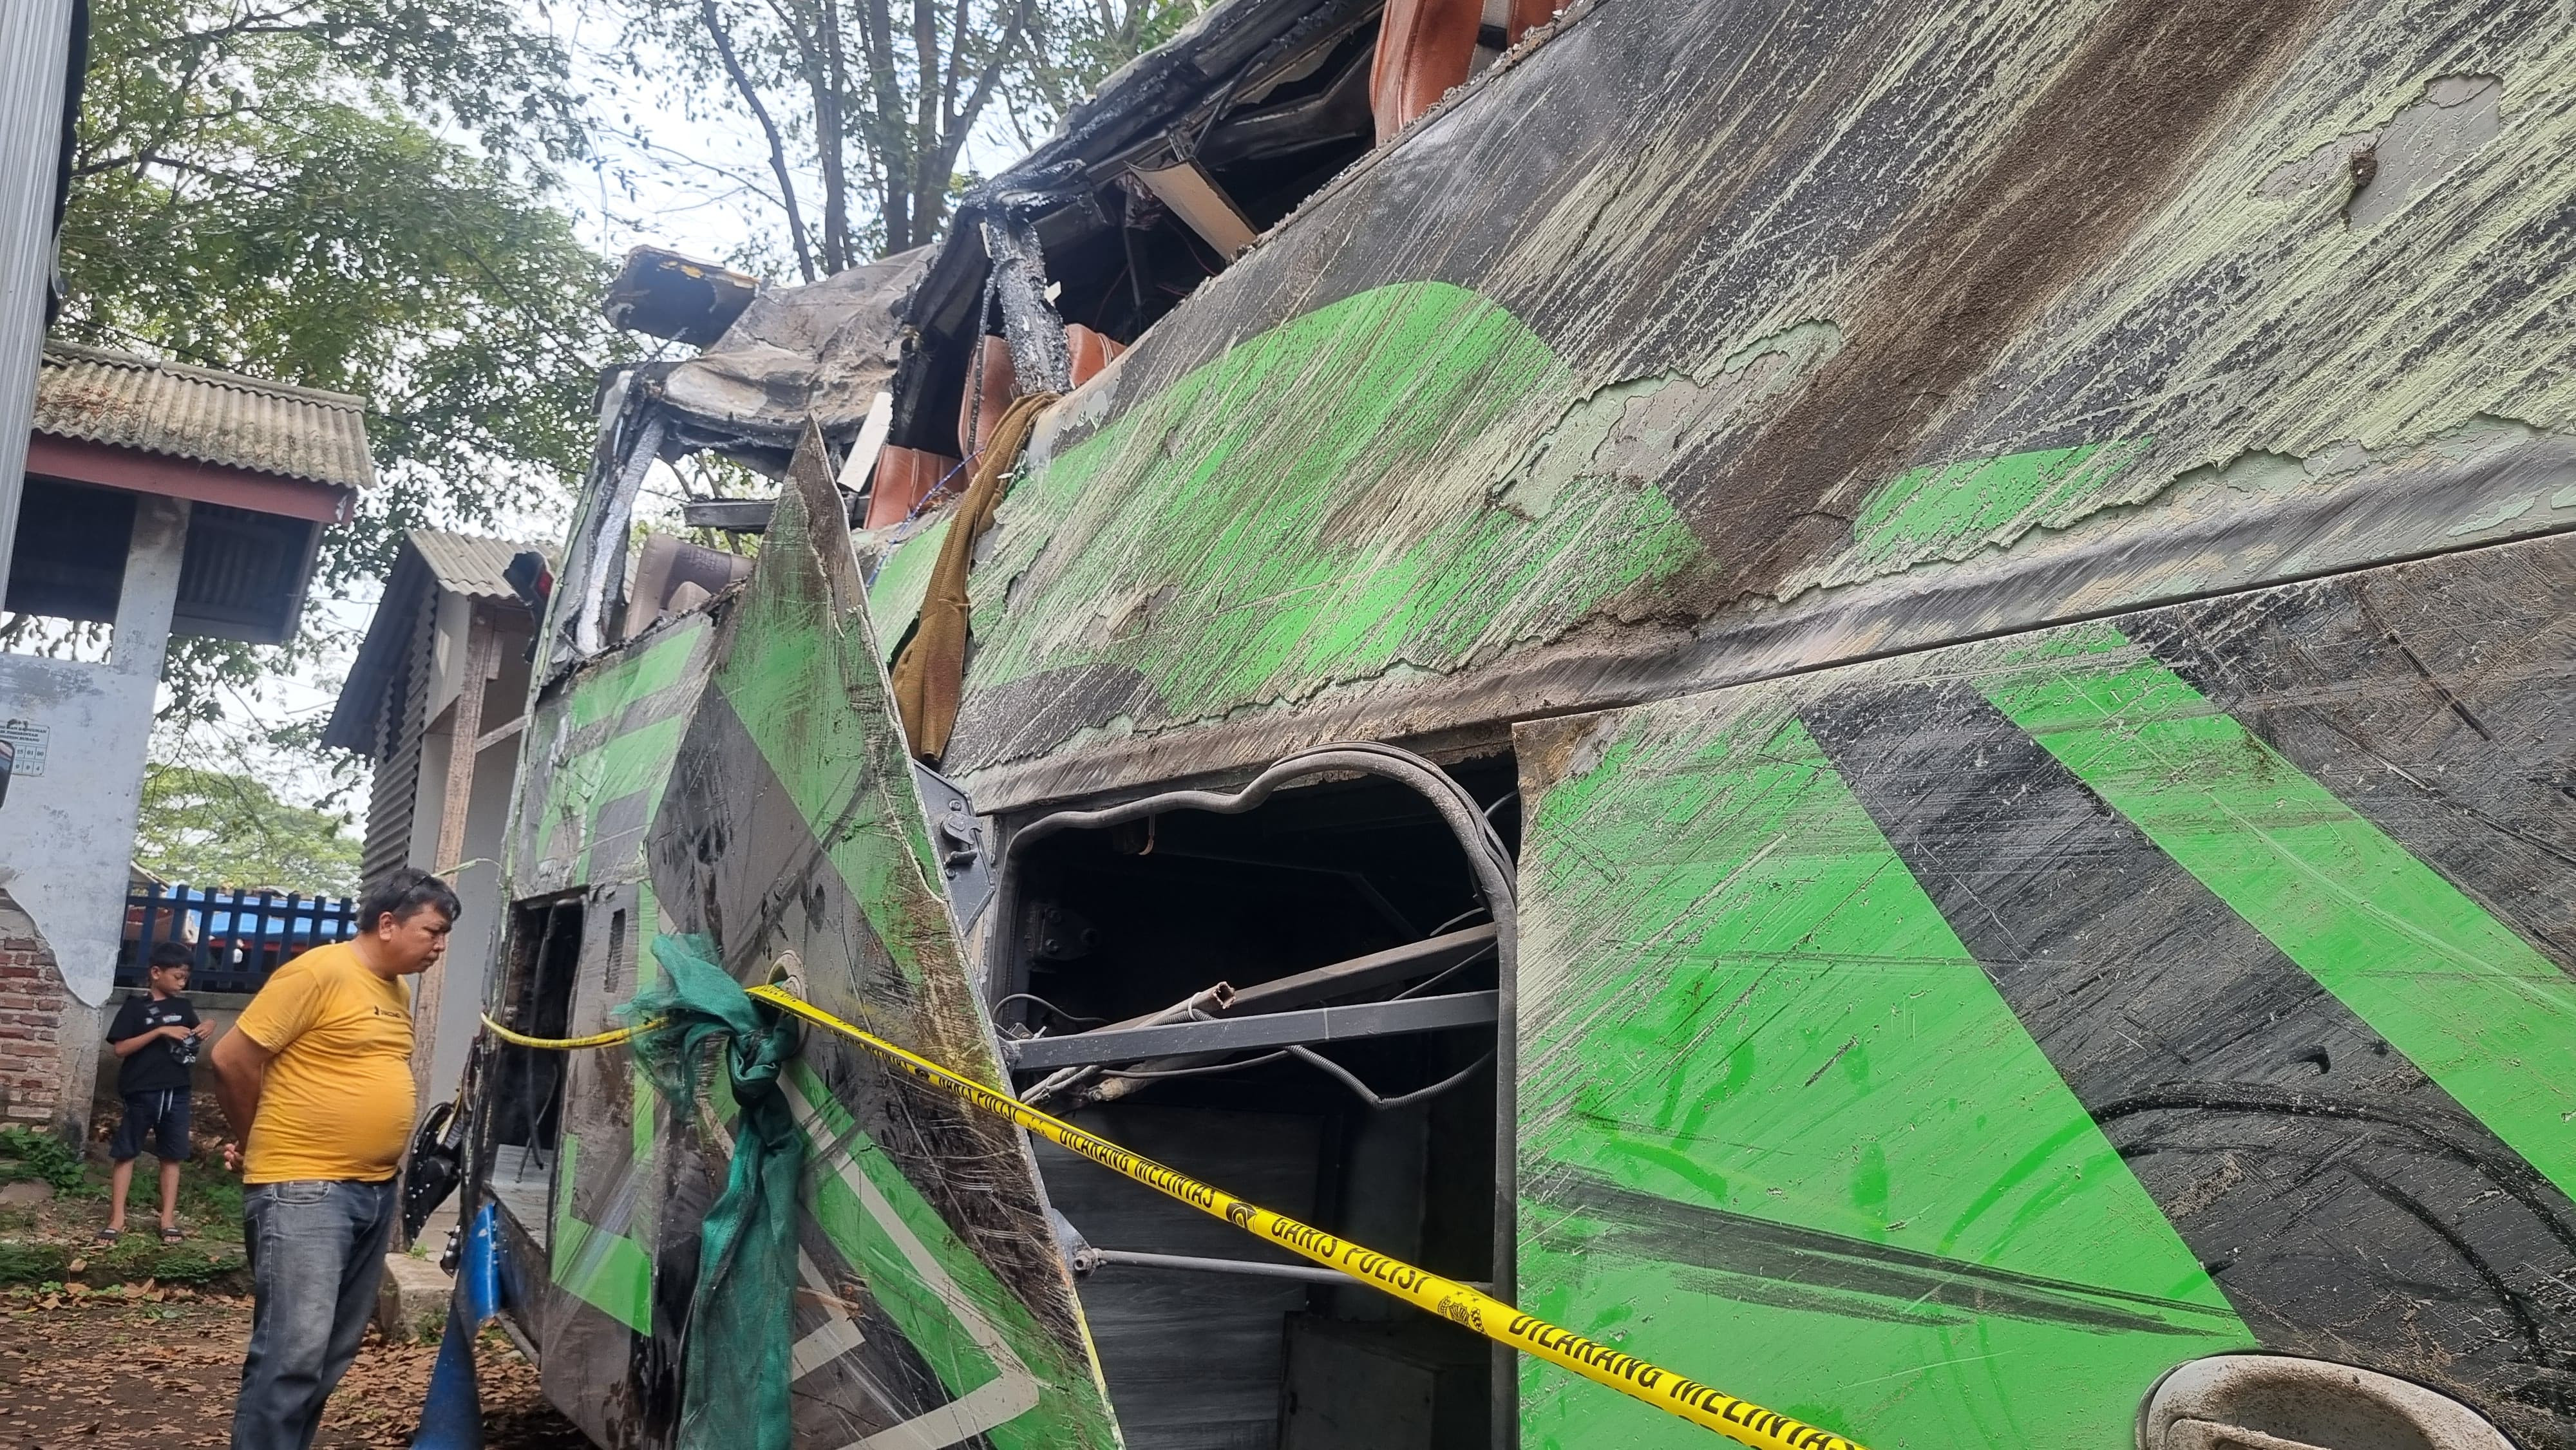 Sopir Bus SMK Lingga Kencana Jadi Tersangka Kecelakaan Maut di Subang - JPNN.com Jabar